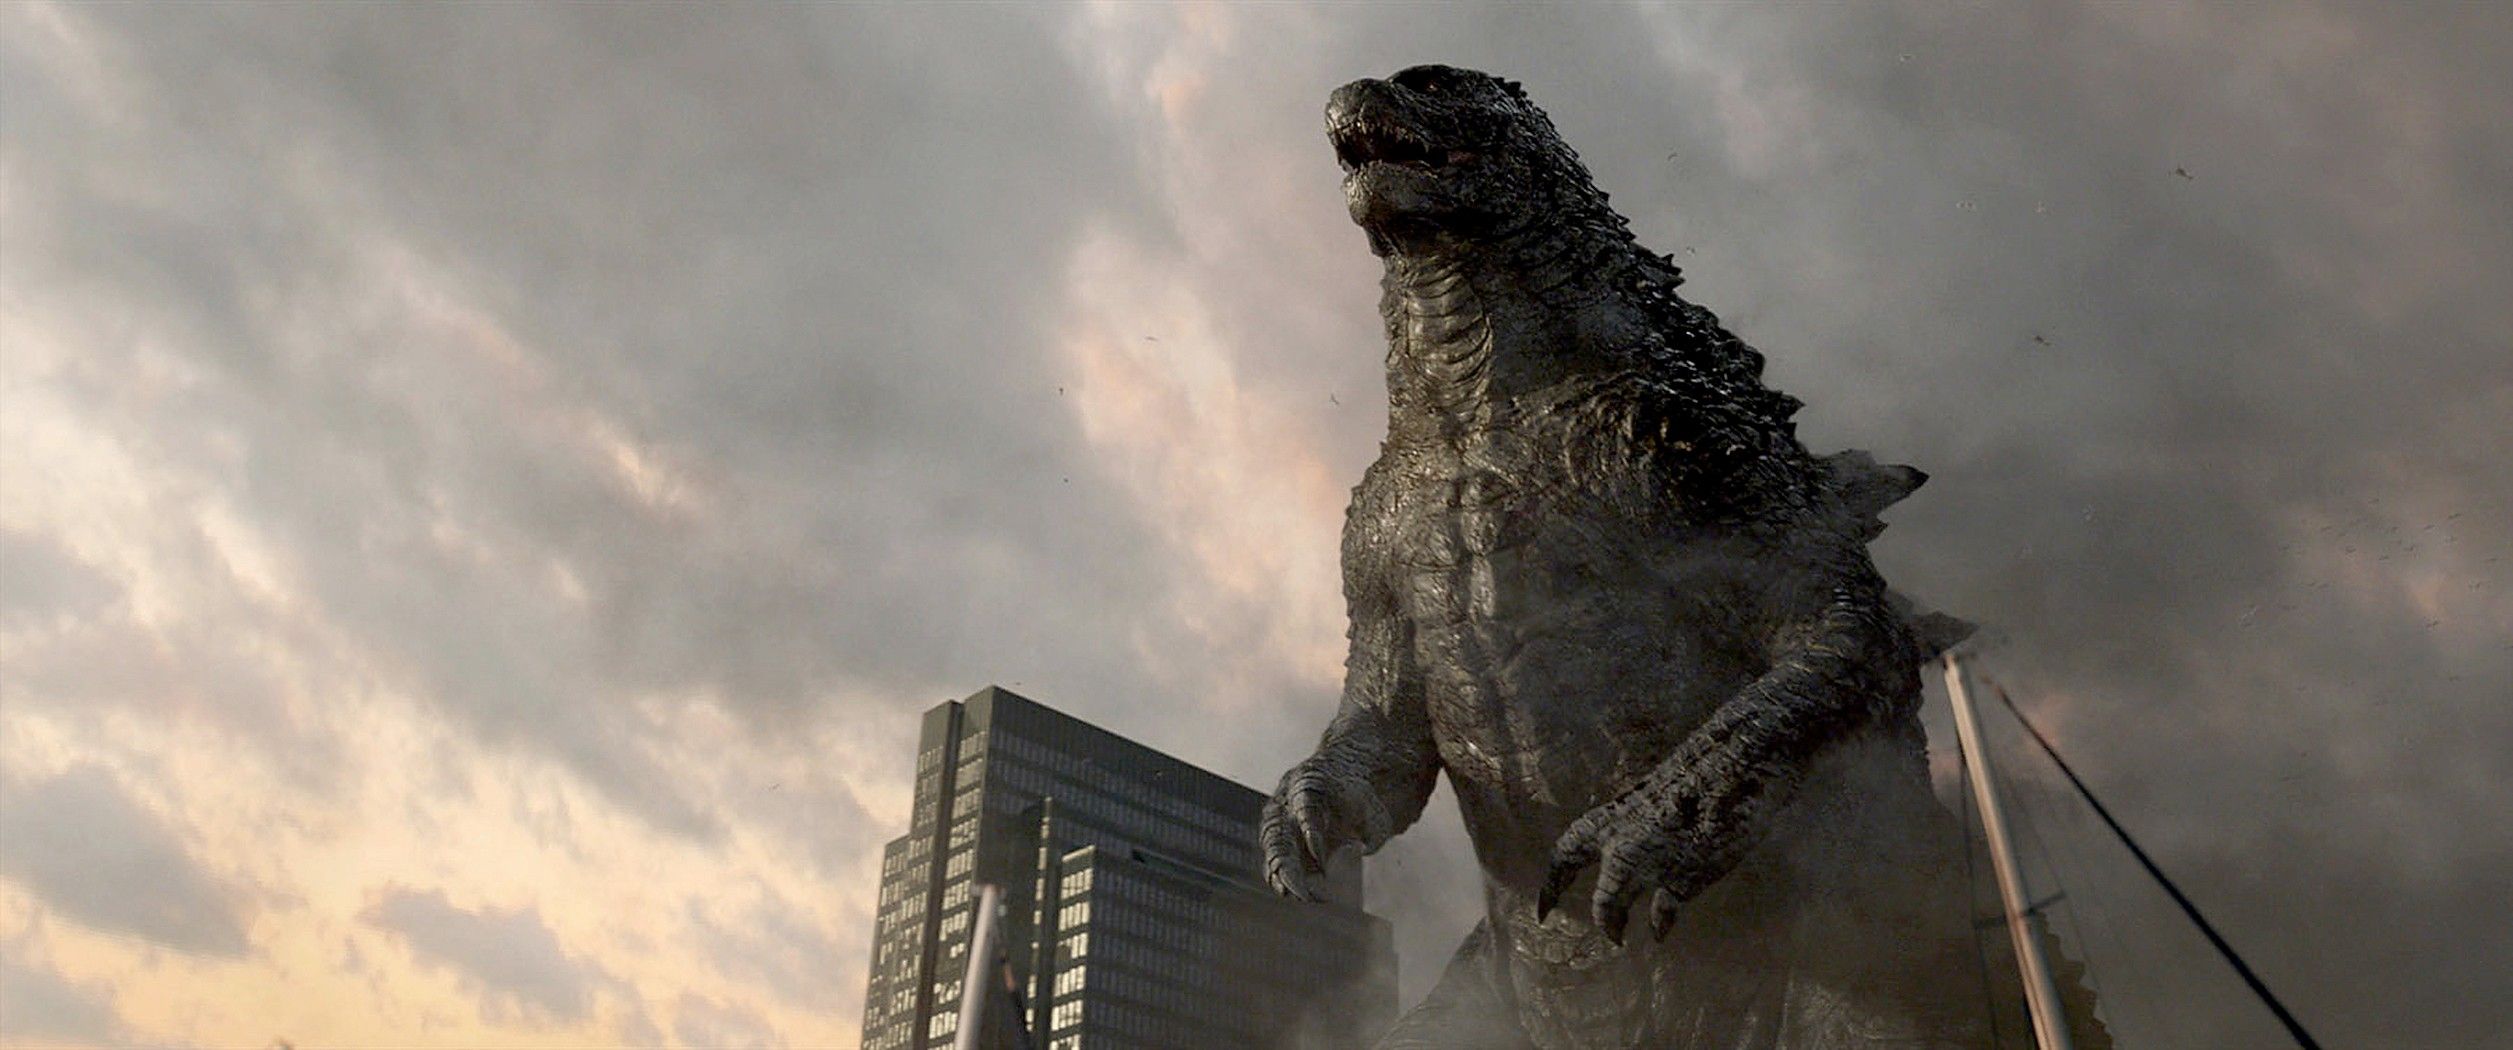 Godzilla Photo